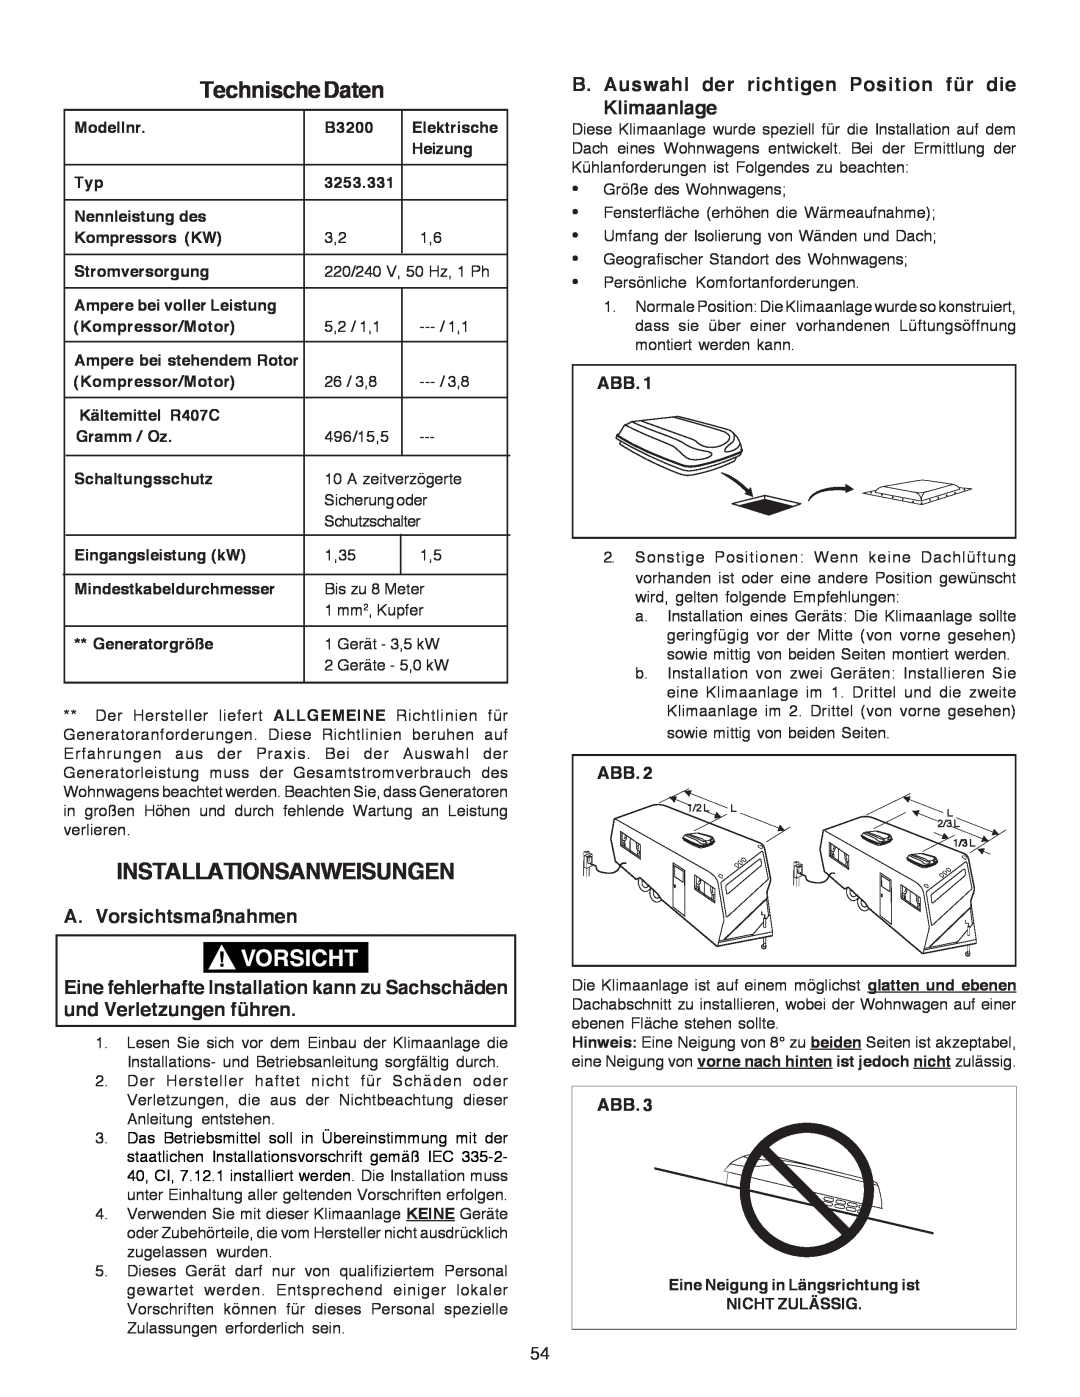 Dometic B3200 manual TechnischeDaten, Installationsanweisungen, A. Vorsichtsmaßnahmen 